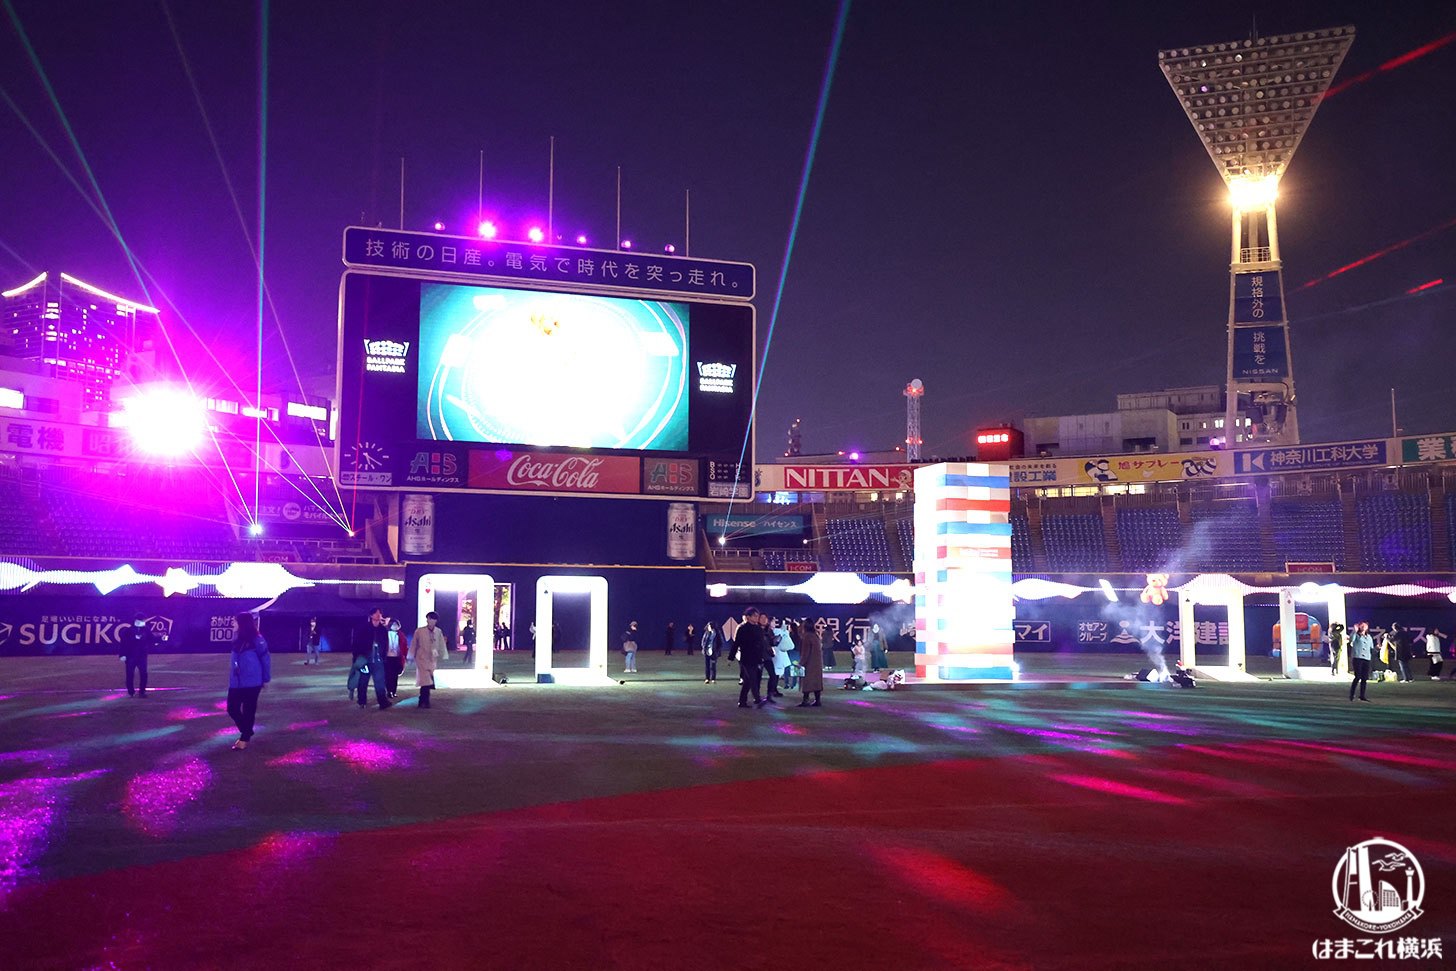 横浜スタジアム「ボールパークファンタジア」2023年は昼夜で異なる空間演出！音楽と光のイルミネーション体験